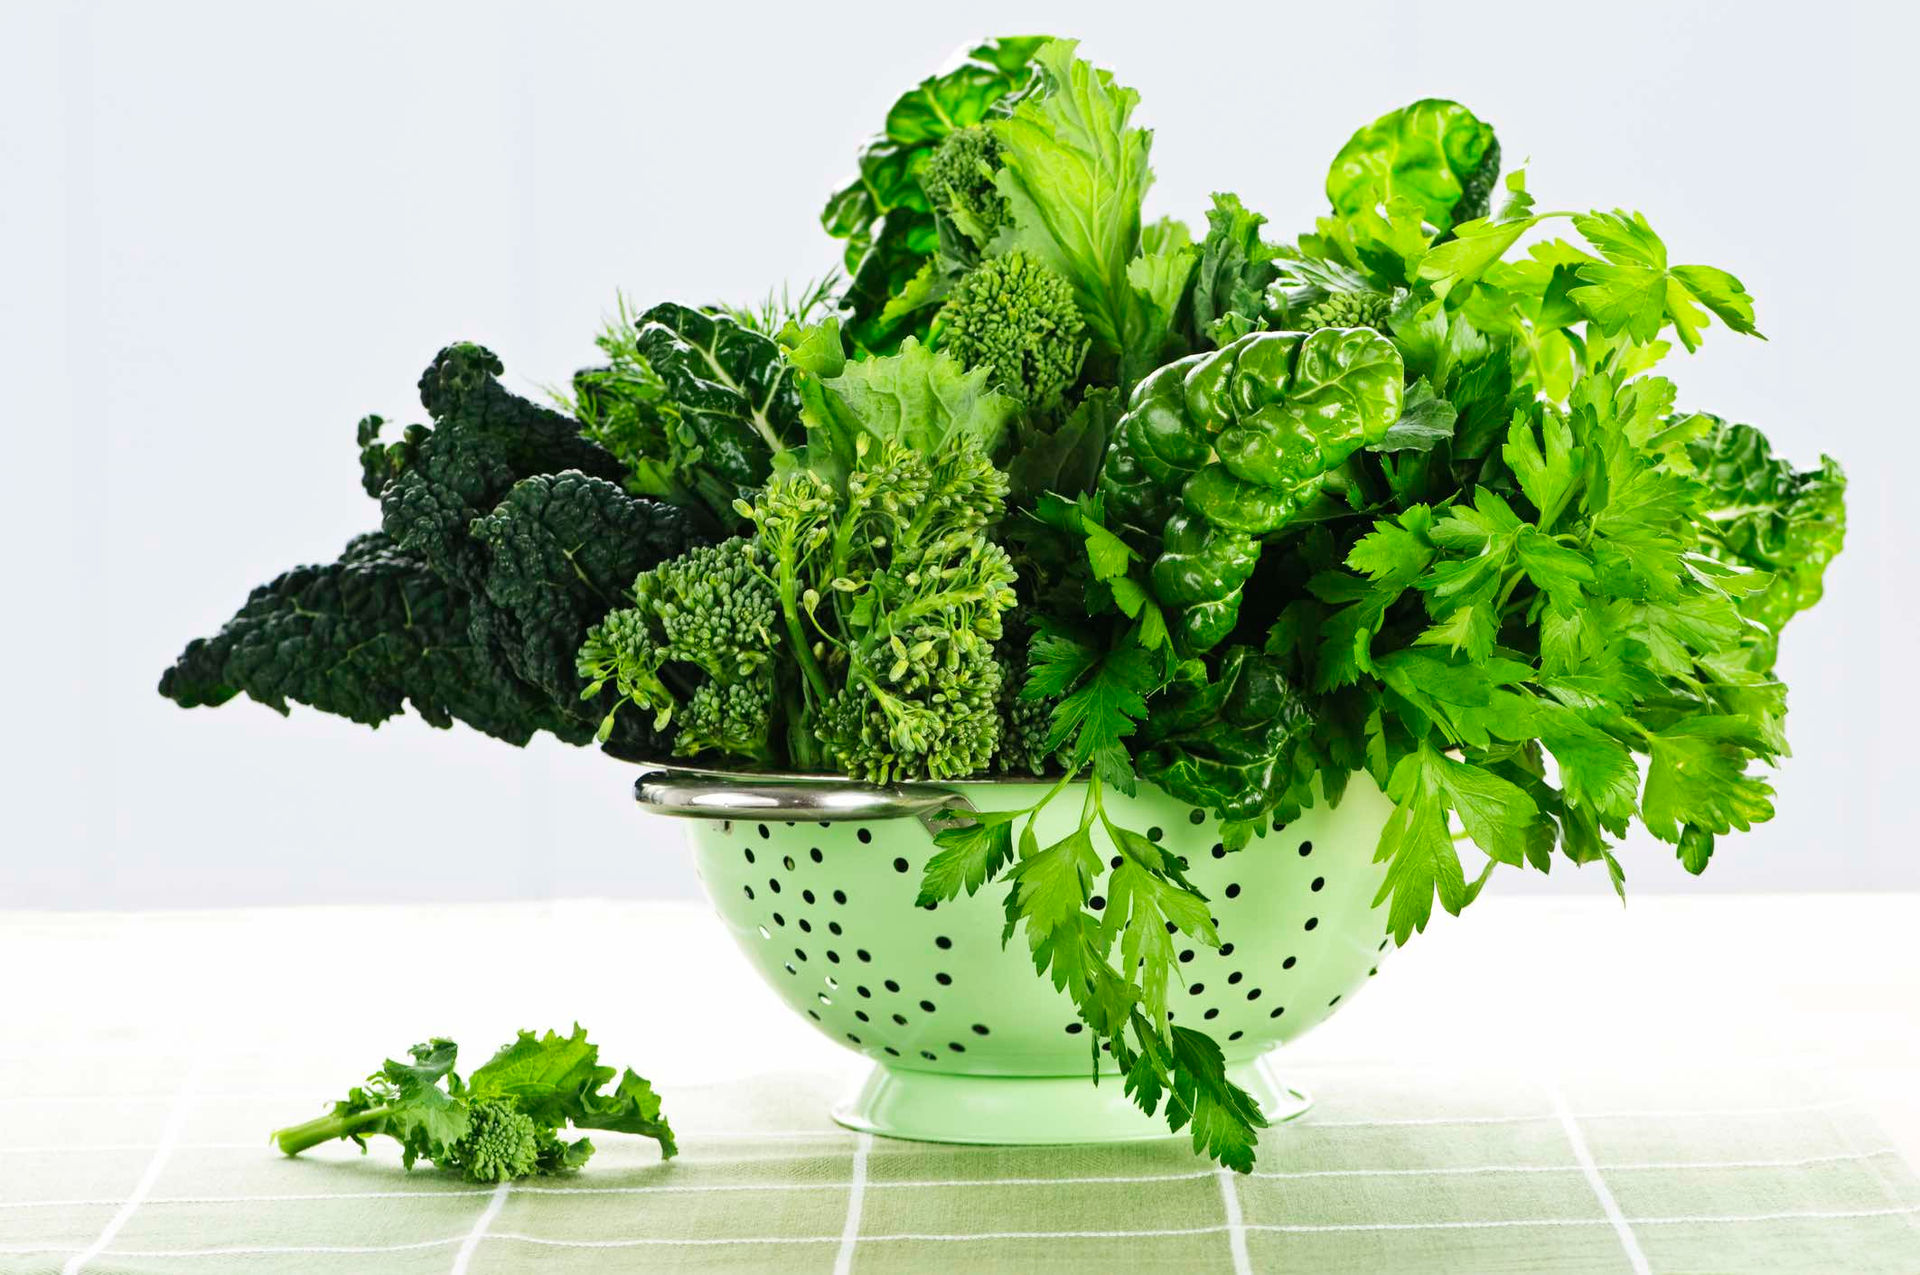  Các loại rau lá xanh đậm giàu vitamin C, giúp thúc đẩy sản sinh collagen tự nhiên